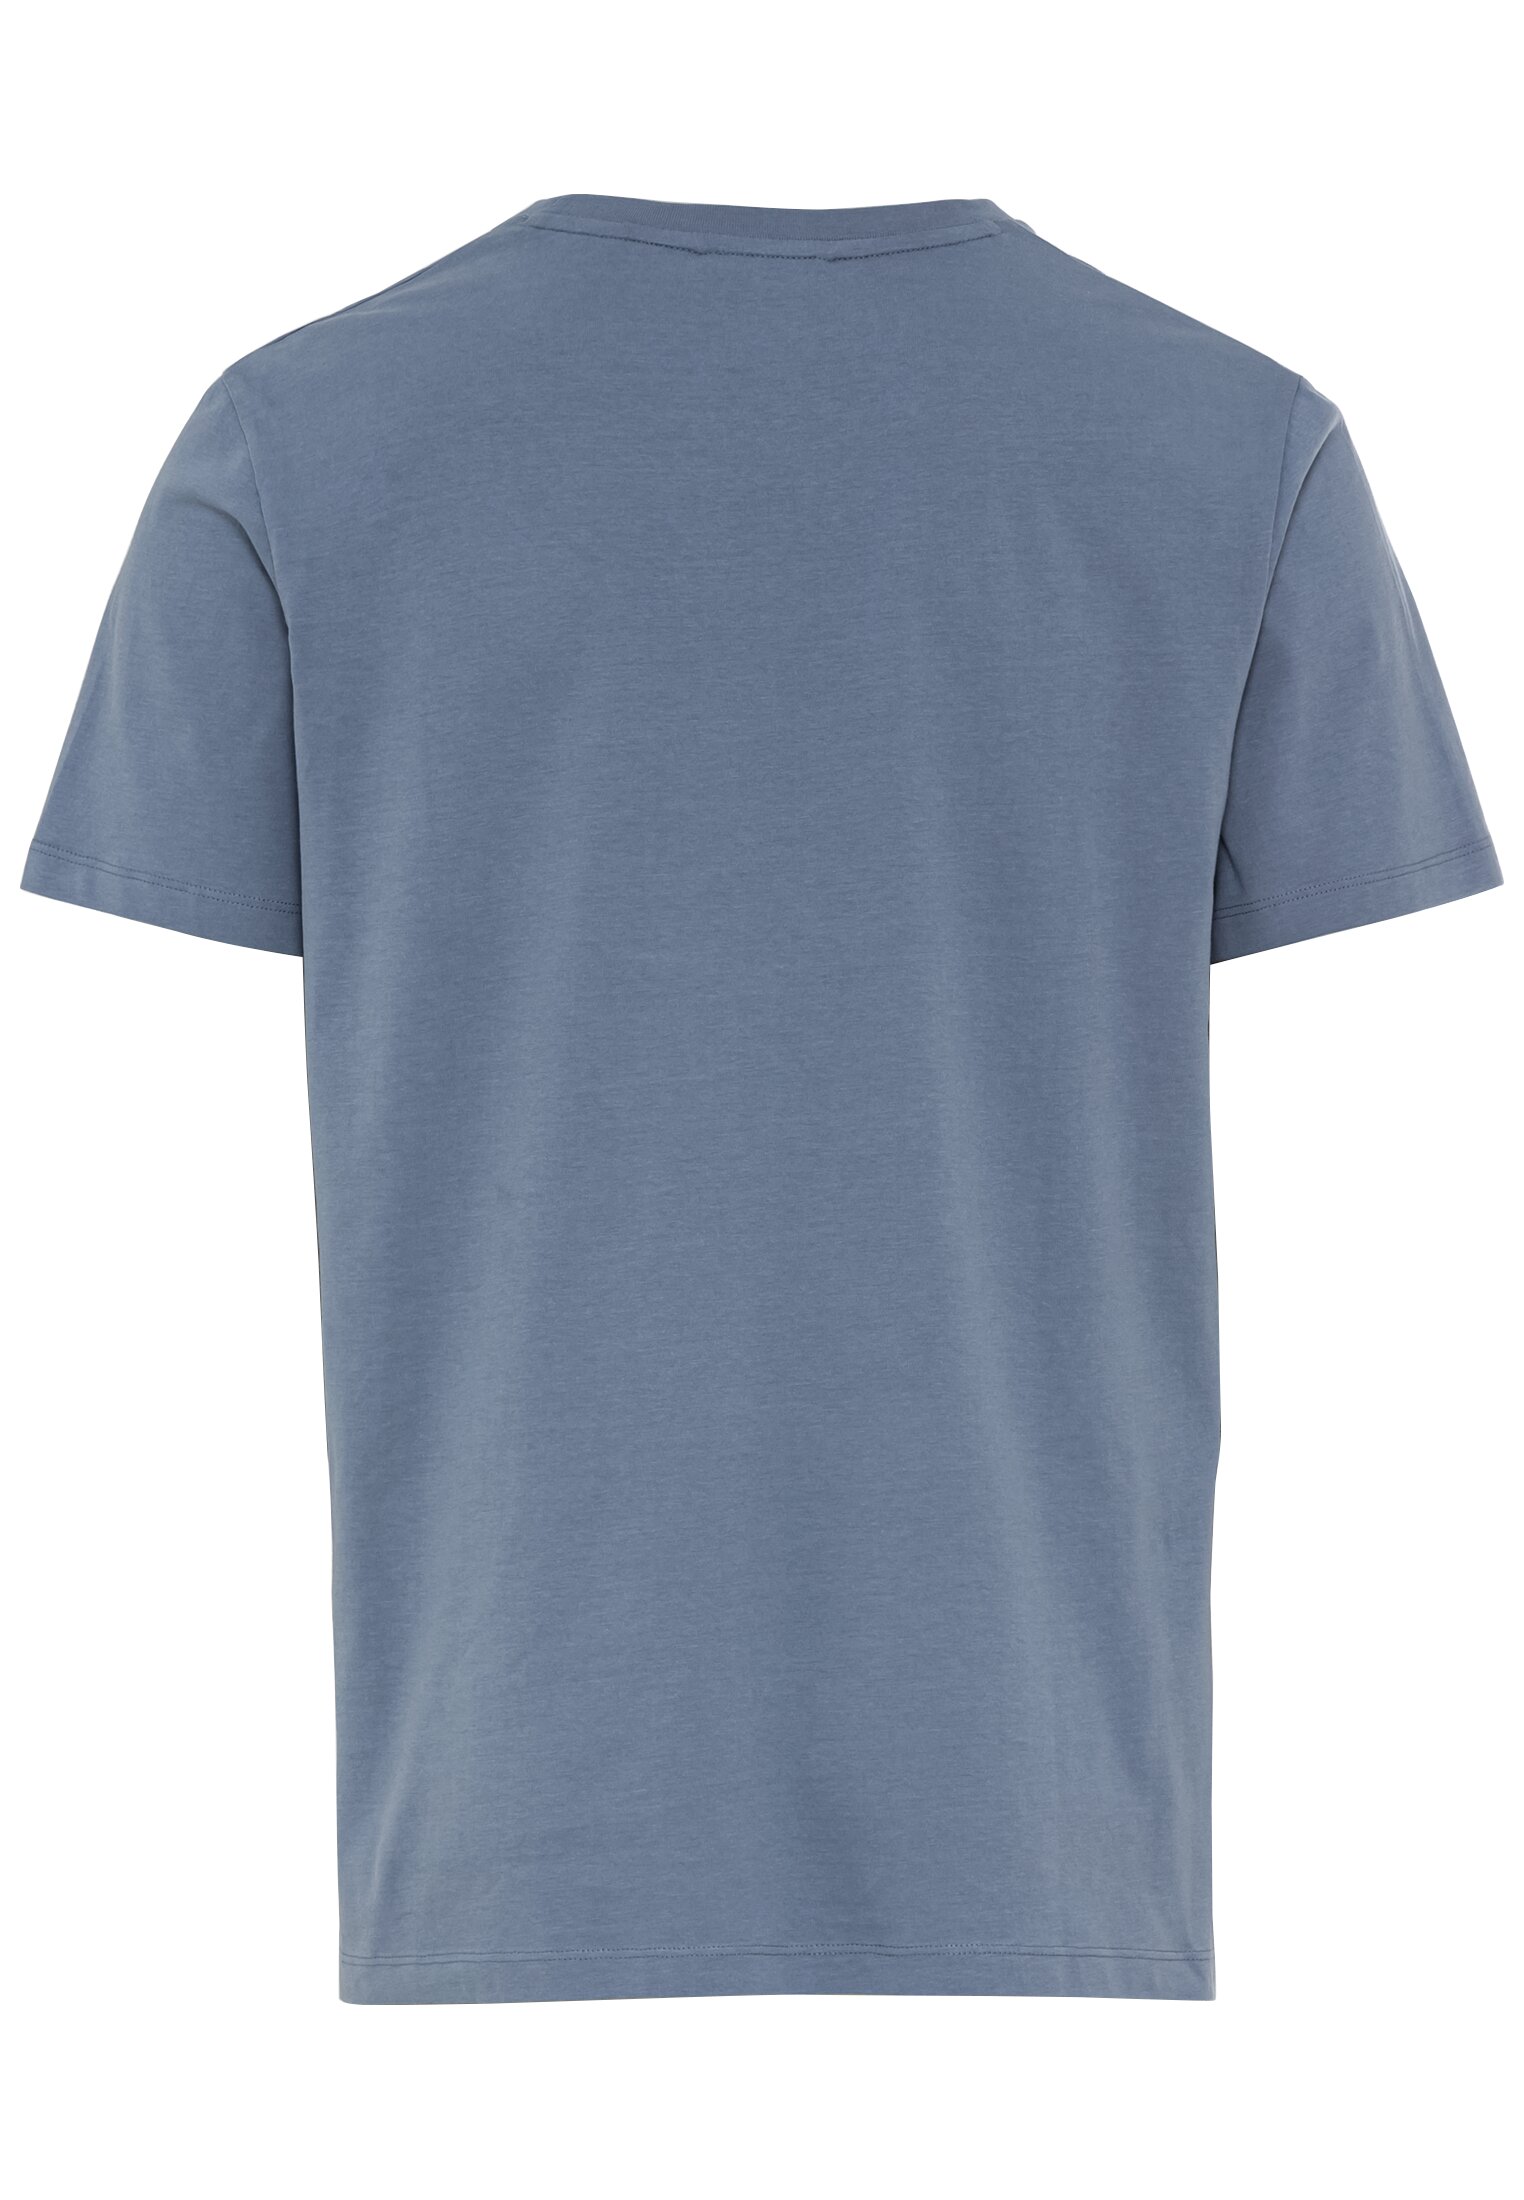 Мужская футболка Camel Active, голубая, цвет голубой, размер 60 - фото 3